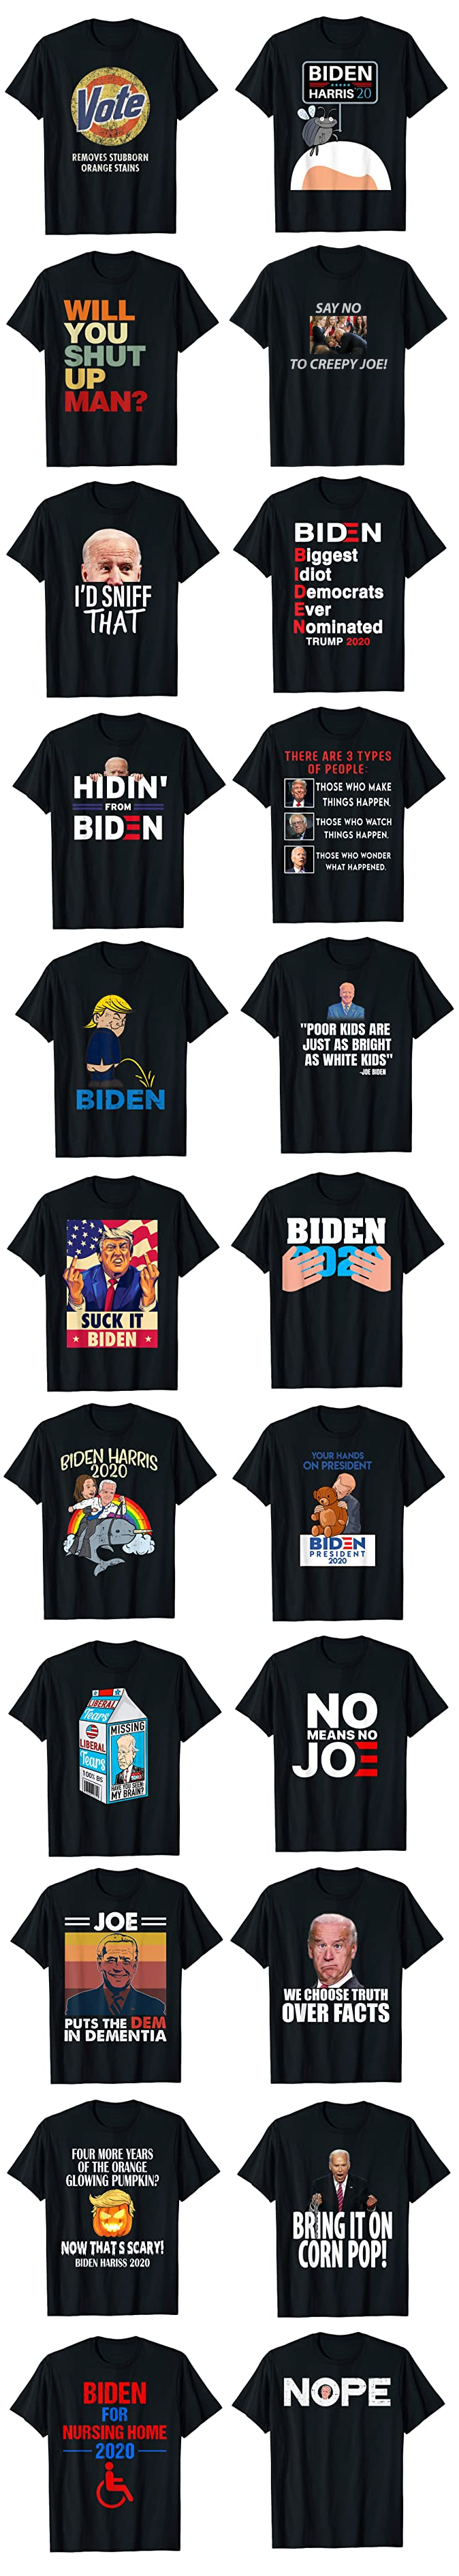 Great-Joe-Biden-T-Shirts